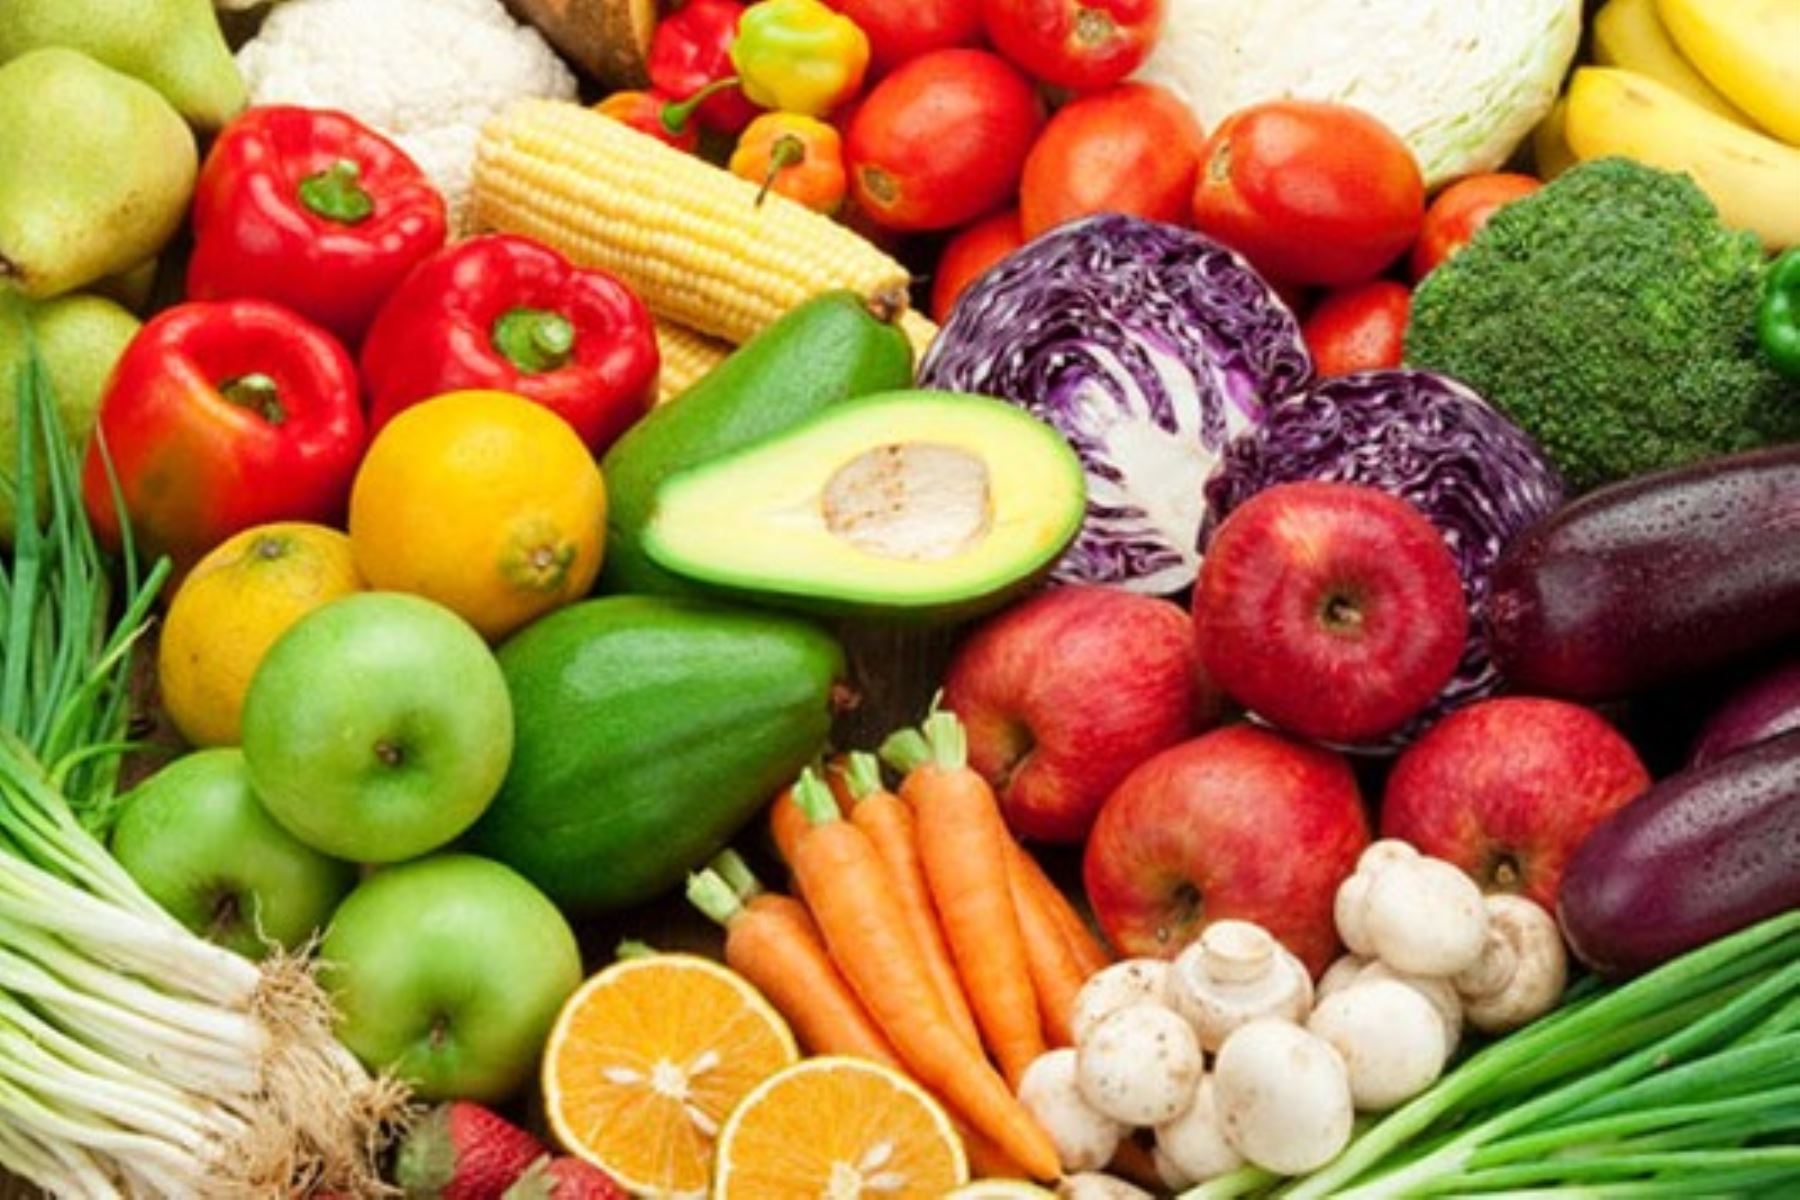 Las Naciones Unidas declaró al 2021 como el “Año Internacional de las Frutas y las Verduras” e instó a la población mundial a adoptar hábitos de alimentación más saludables y equilibrados, basados en el consumo diario de estos superalimentos. ANDINA/Difusión